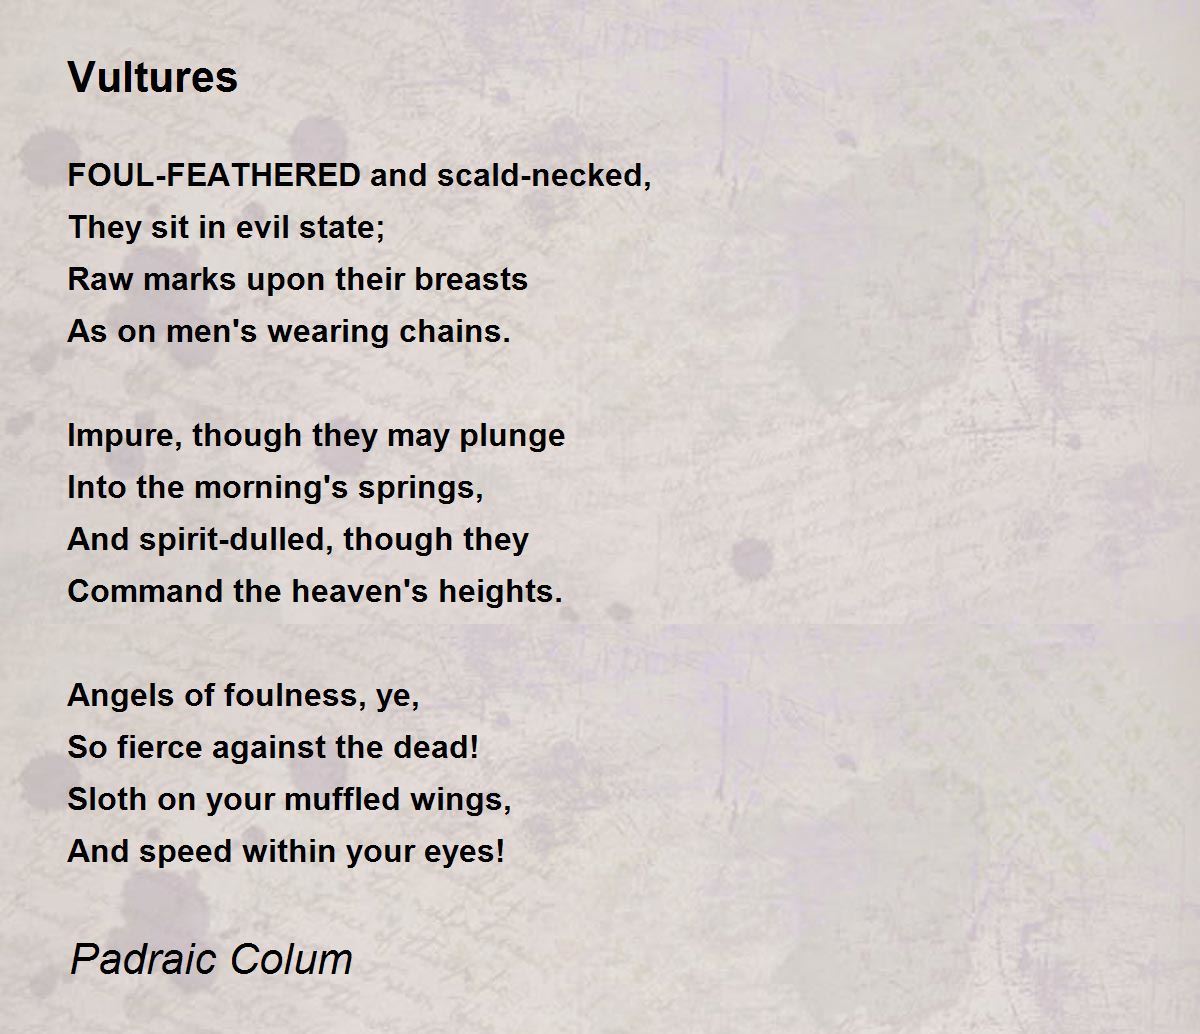 vultures poem essay